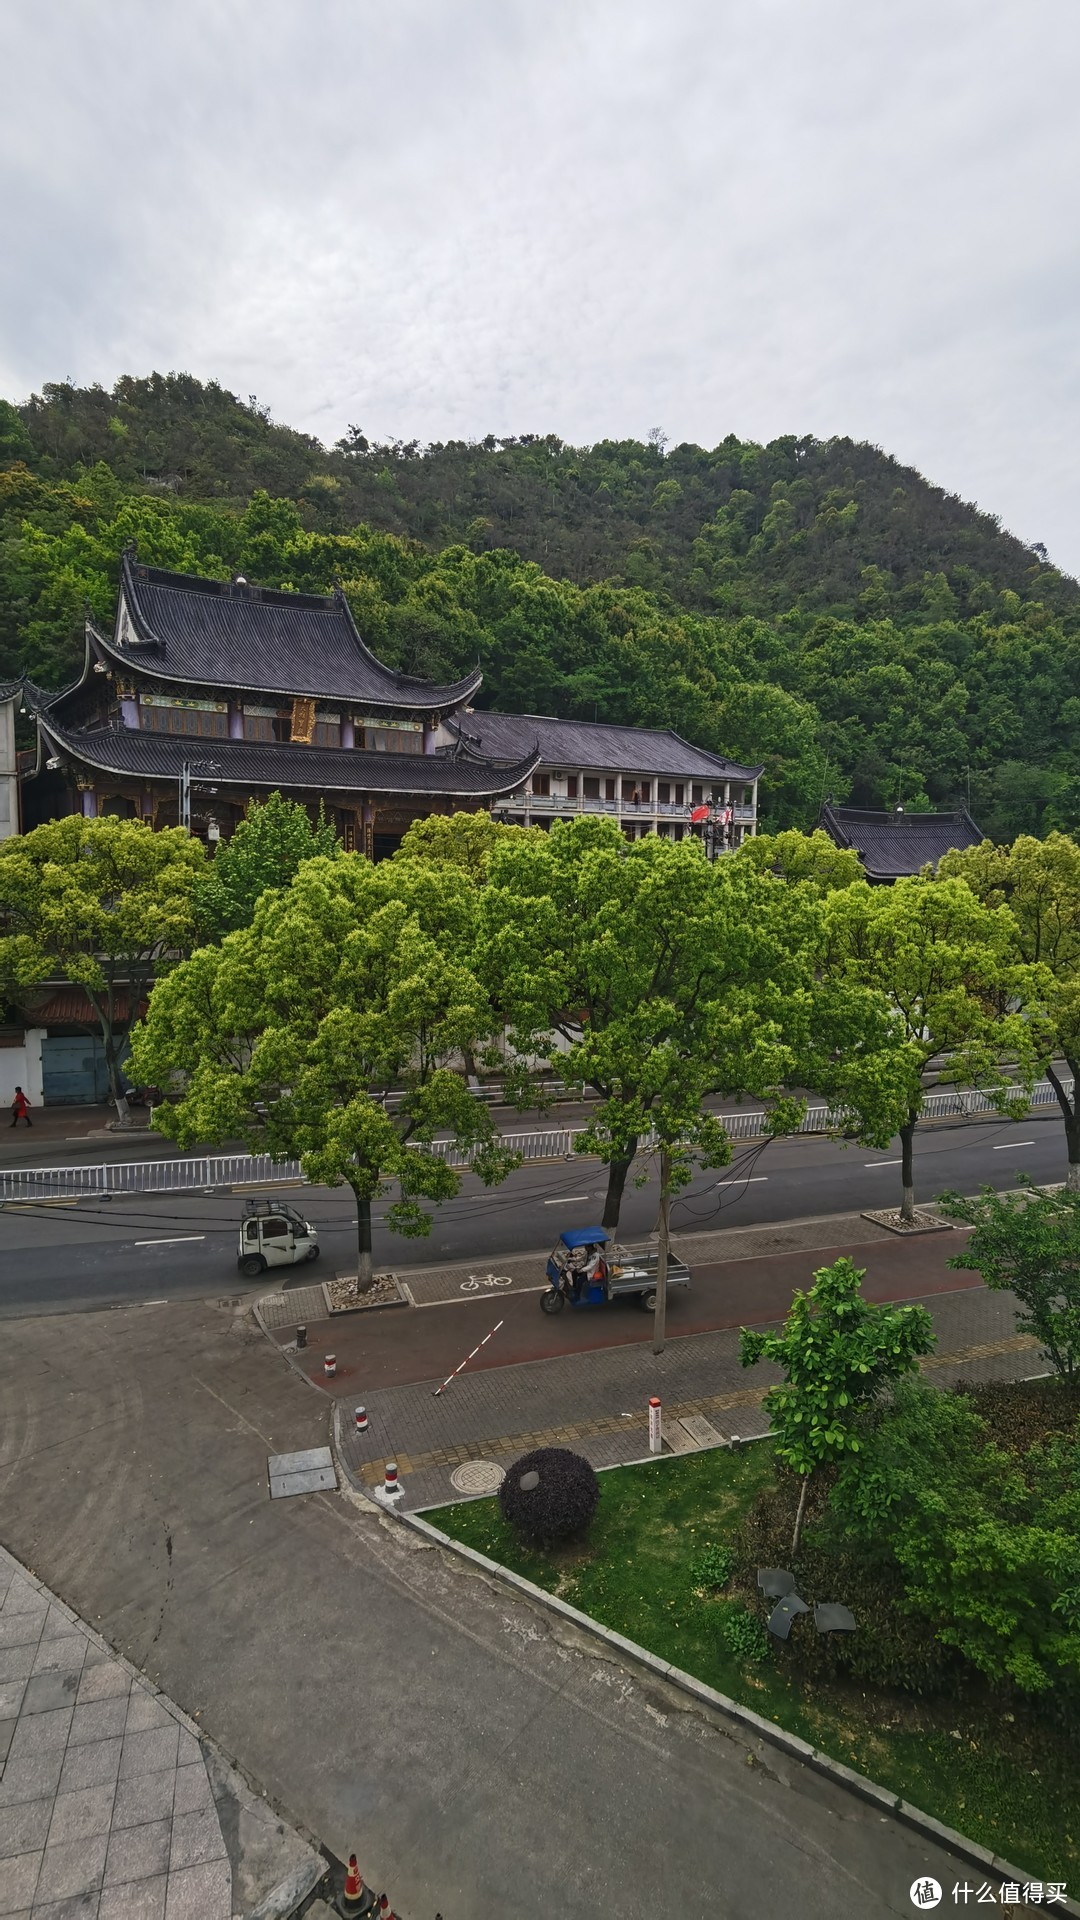 酒店旁边是大悲禅寺，自带安静、详和气息，带着一股子佛气。